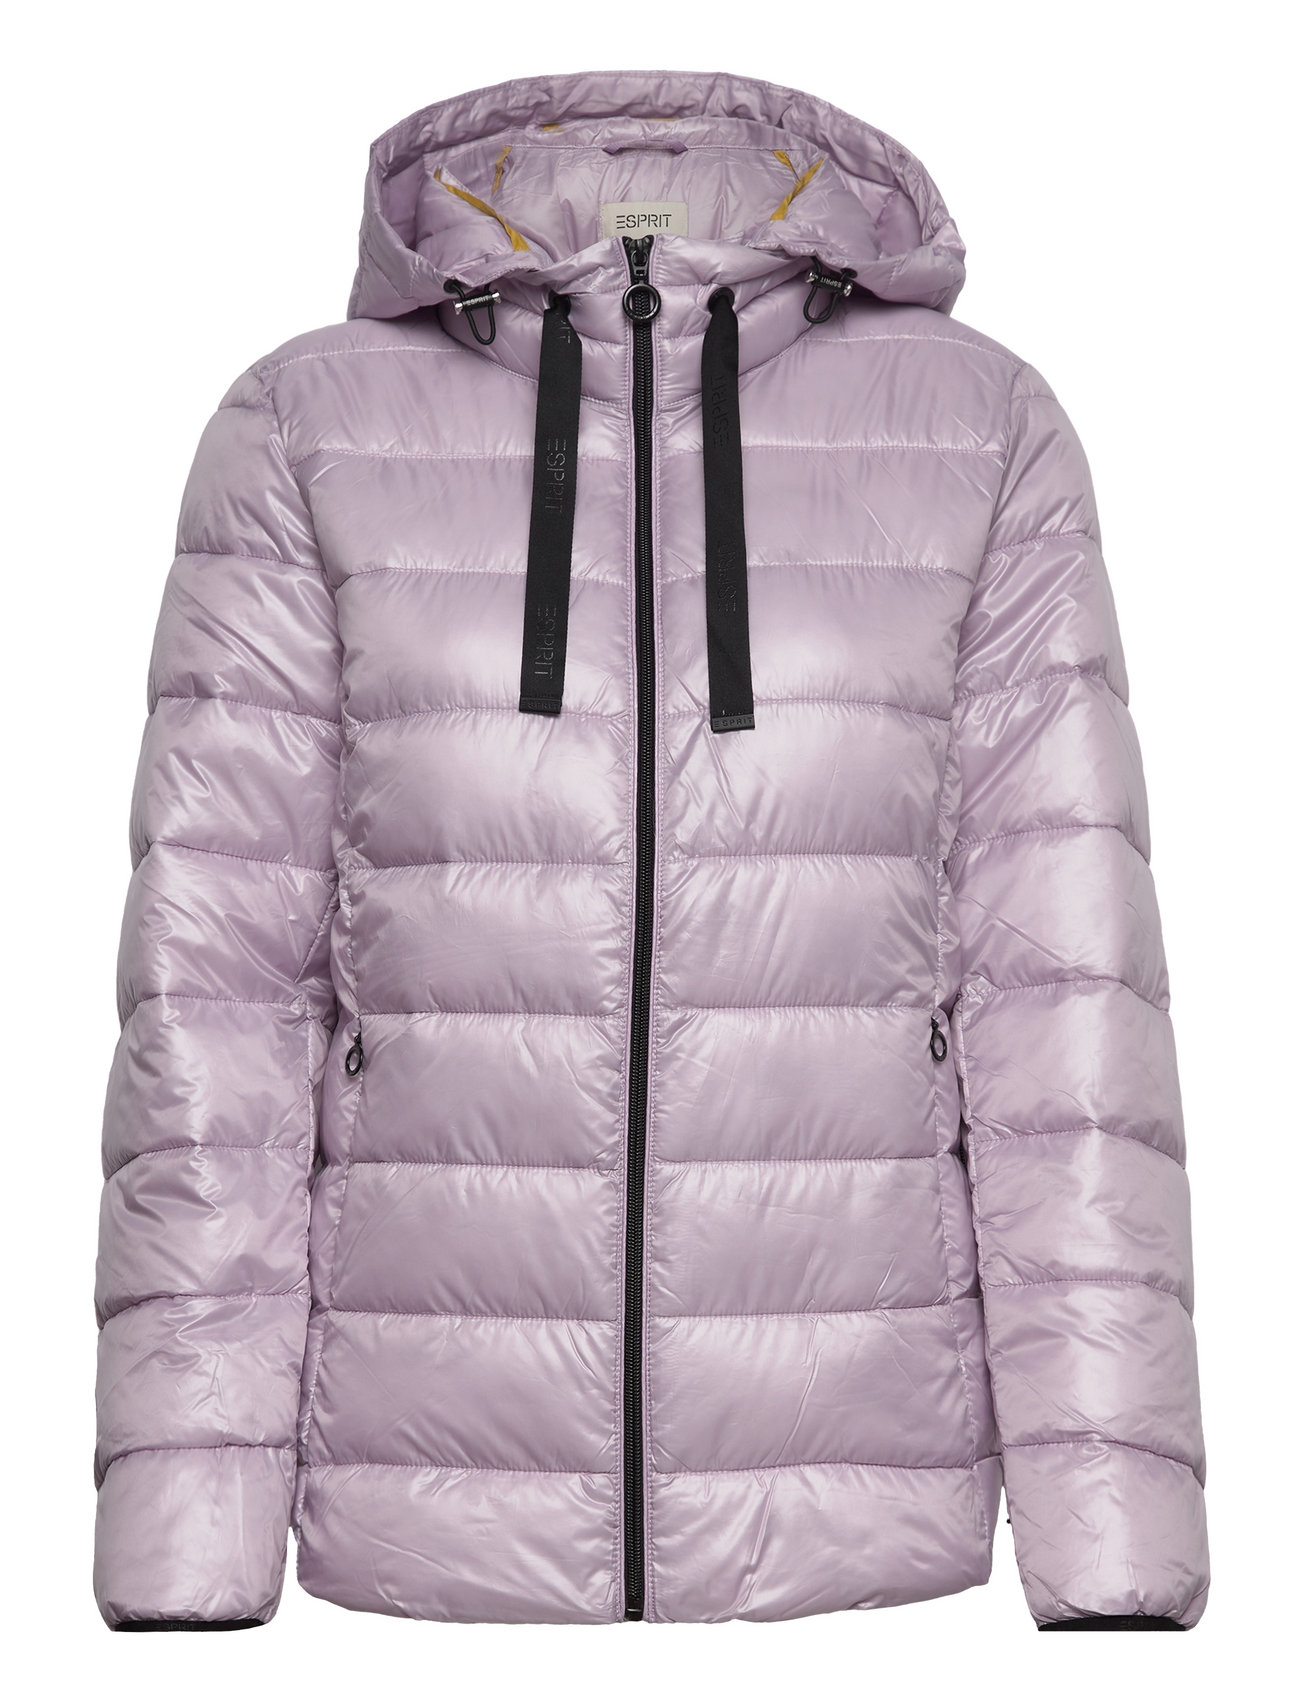 Stor eg binær Slagskib Esprit Casual Quilted Jacket With Detachable Hood (Lavender), 566.99 kr |  Stort udvalg af designer mærker | Booztlet.com